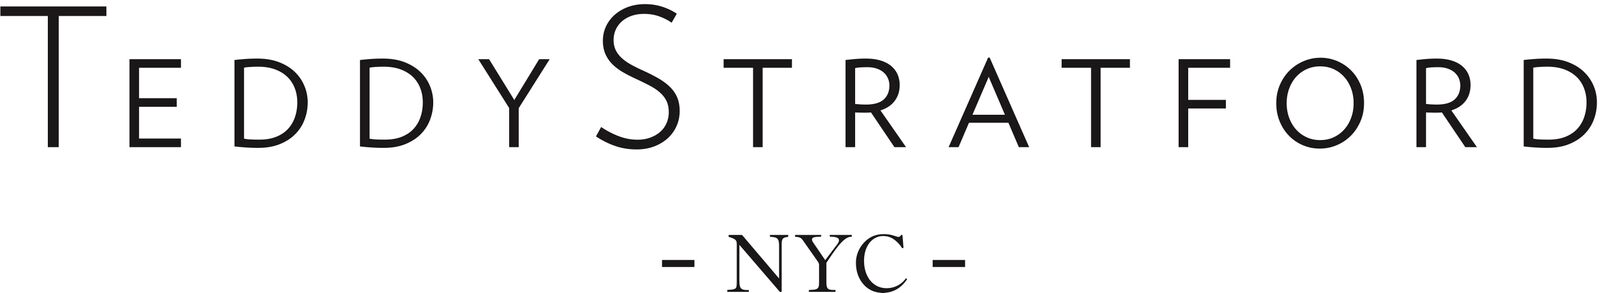 Teddy Stratford Logo.jpg